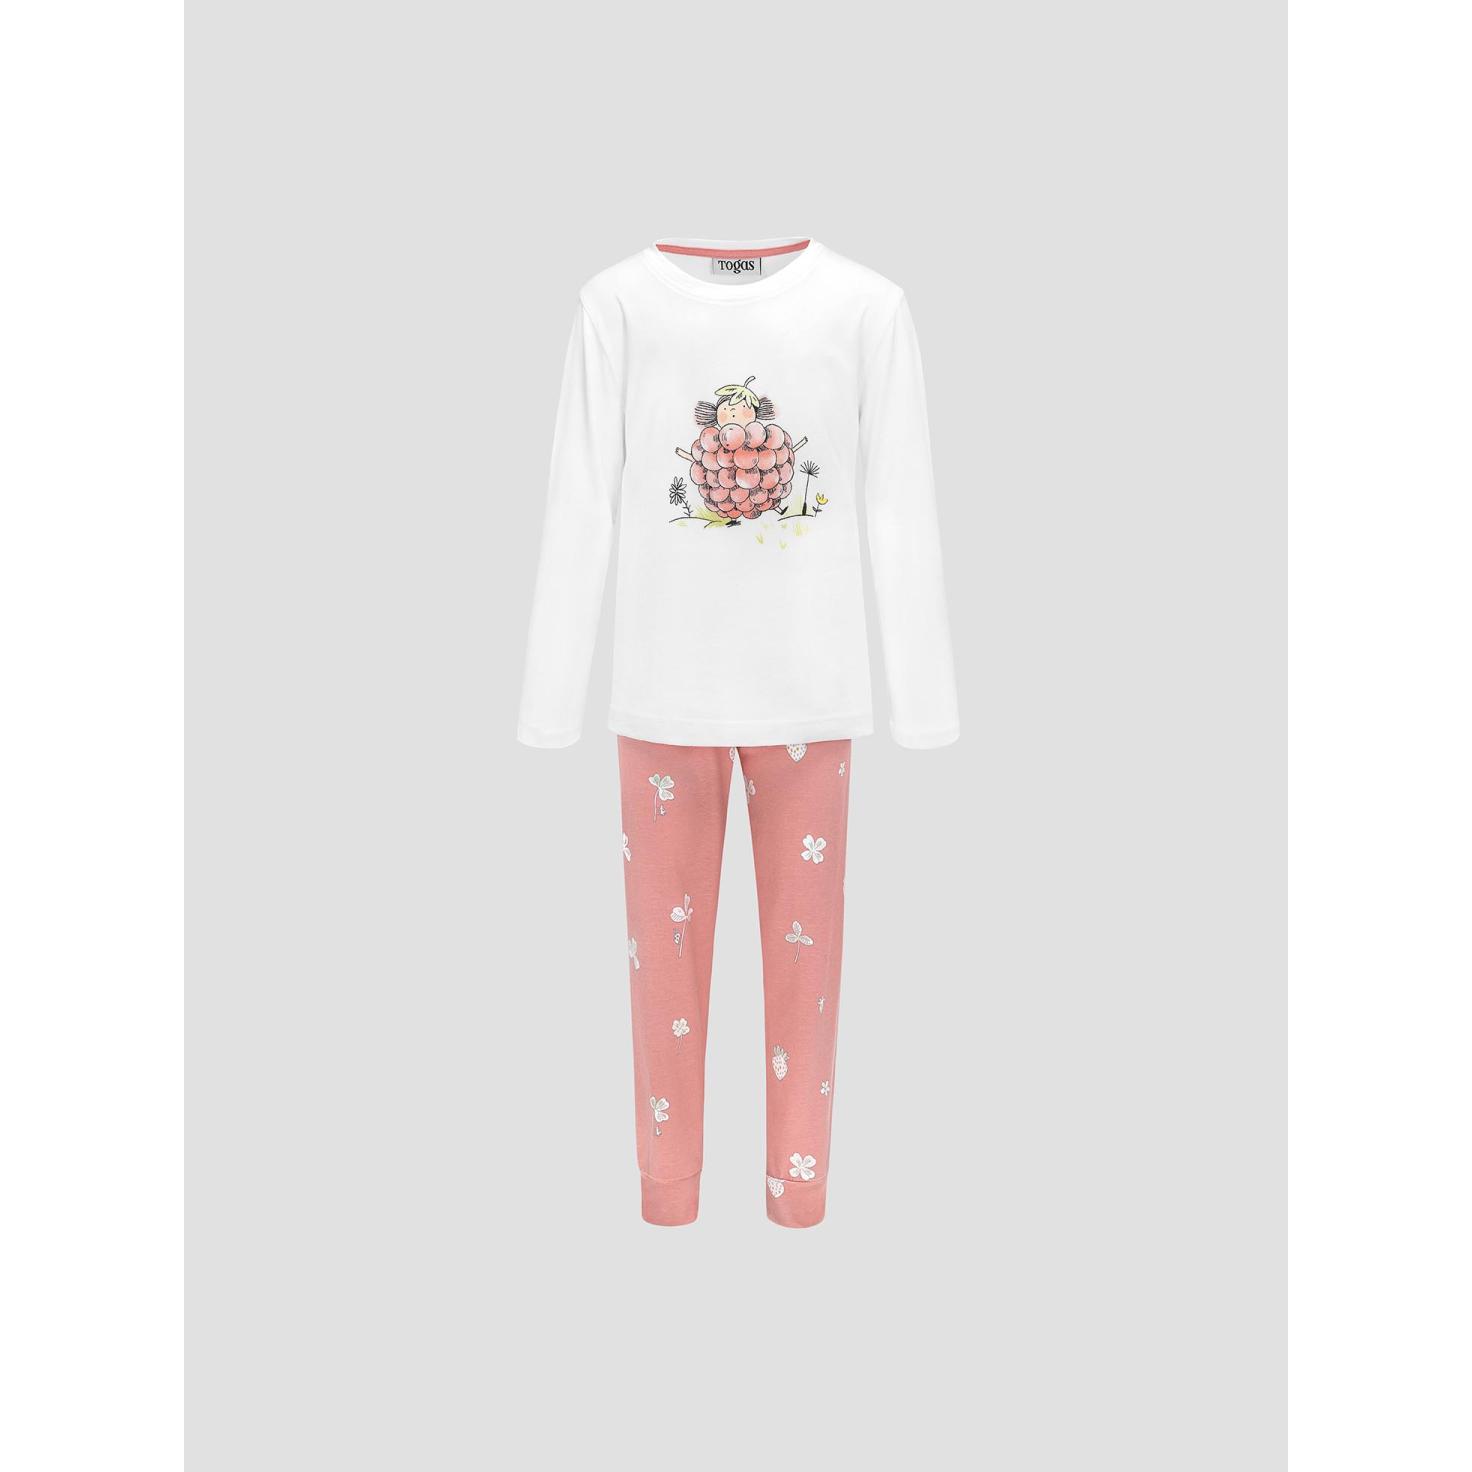 Пижама для девочек Kids by togas Стробби бело-розовый 140-146 см жен пижама с шортами инь янь белый р 50